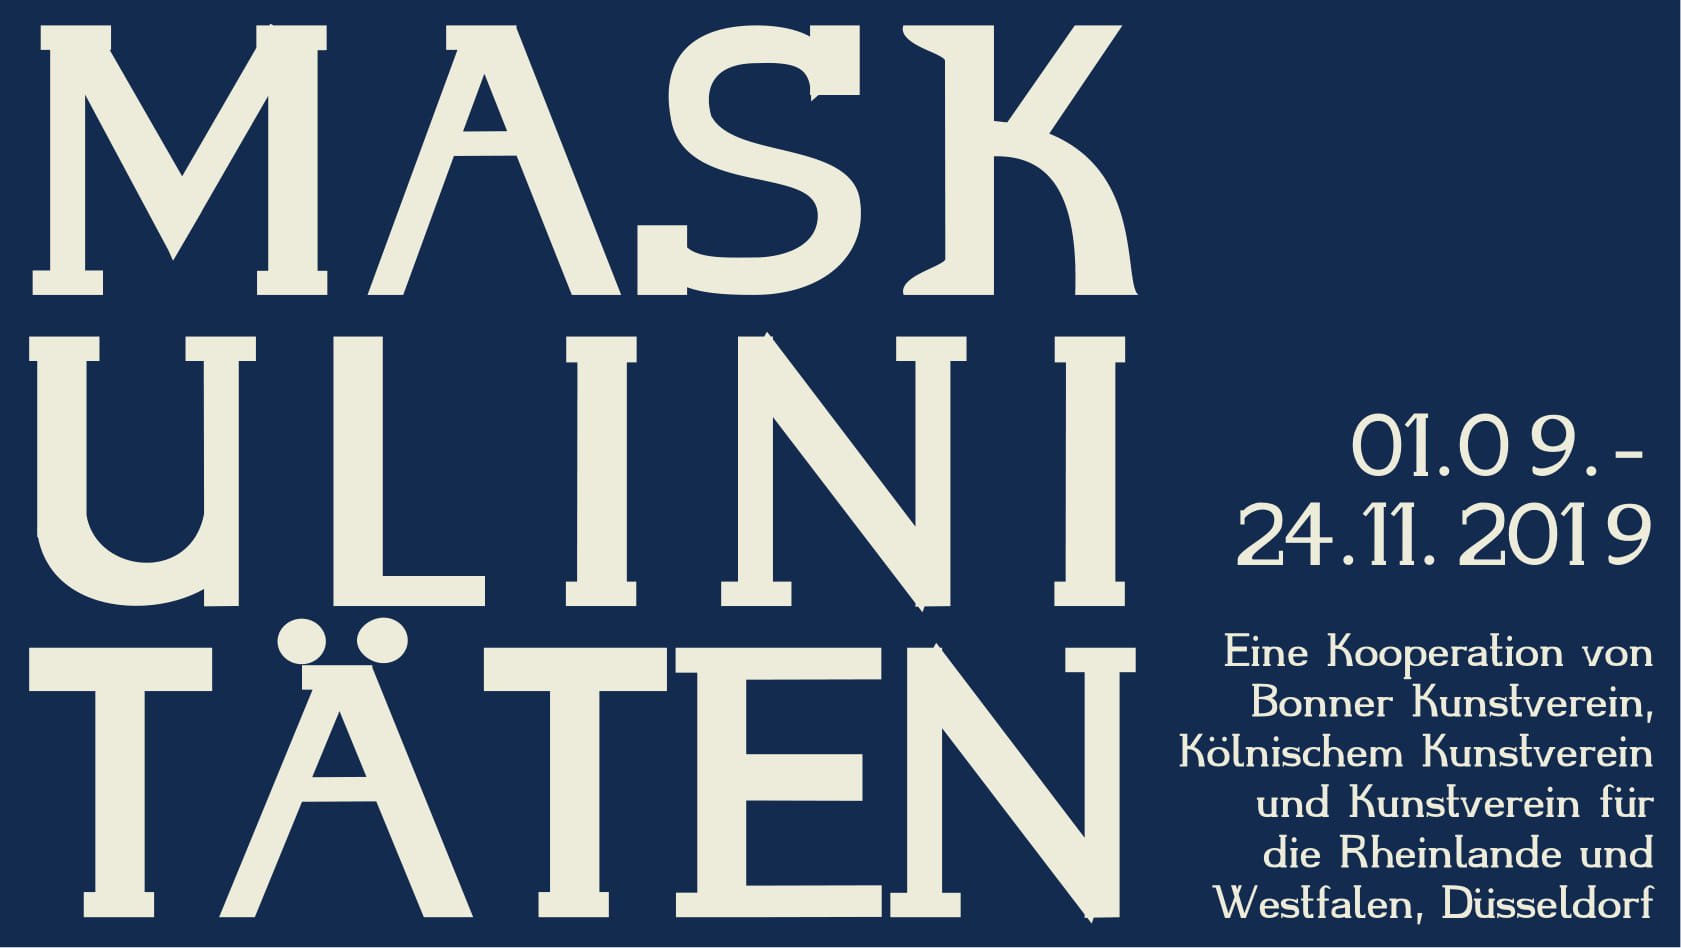 Maskulinitäten. A cooperation between Bonner Kunstverein, Kölnischer Kunstverein und Kunstverein für die Rheinlande und Westfalen, Düsseldorf